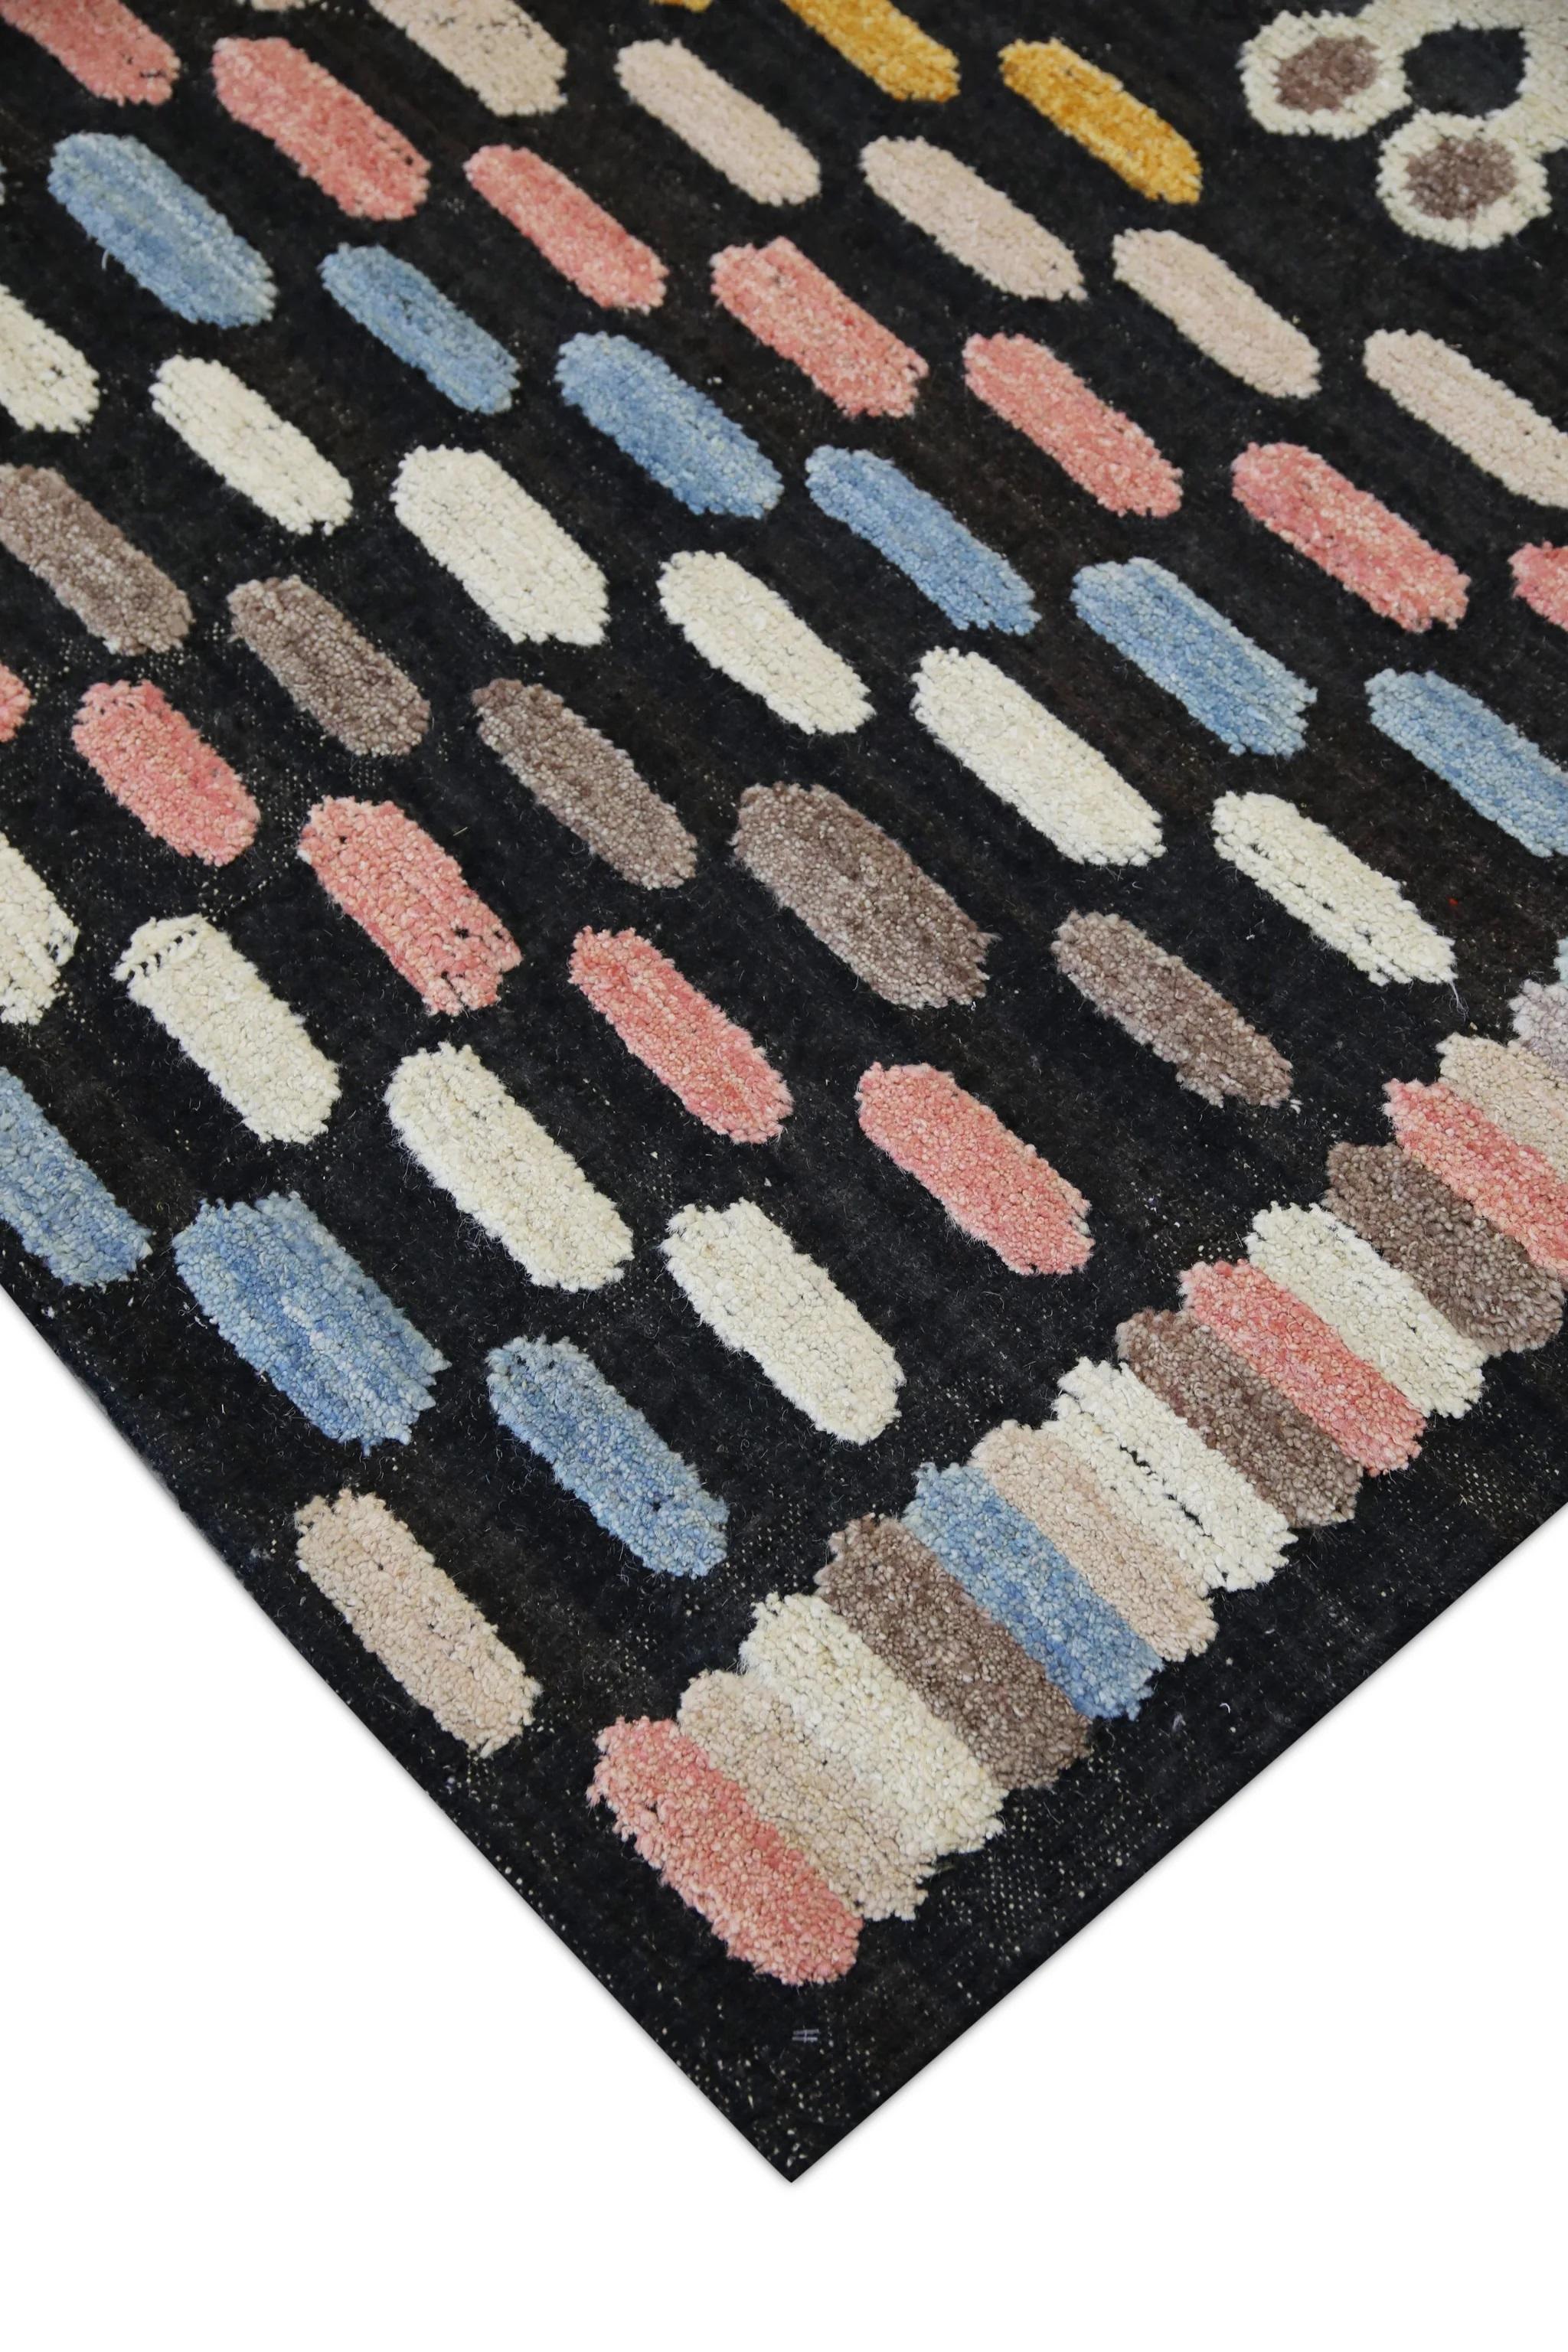 Vegetable Dyed Flatweave Handmade Wool Rug in Pink, Blue, Yellow Geometric Design 8'11